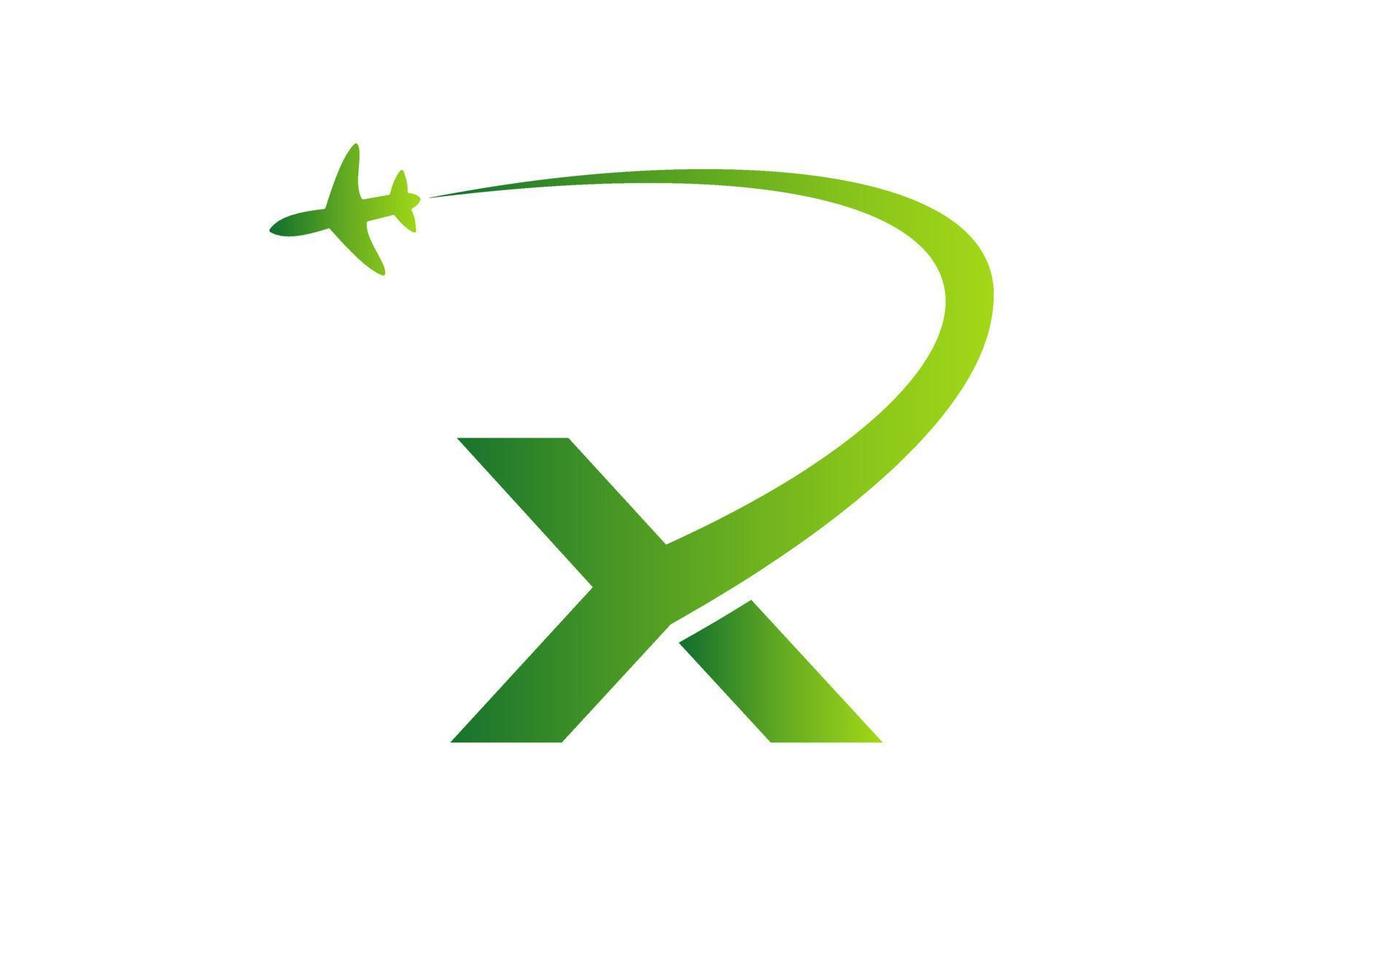 lettera X viaggio logo design concetto con volante aereo simbolo vettore